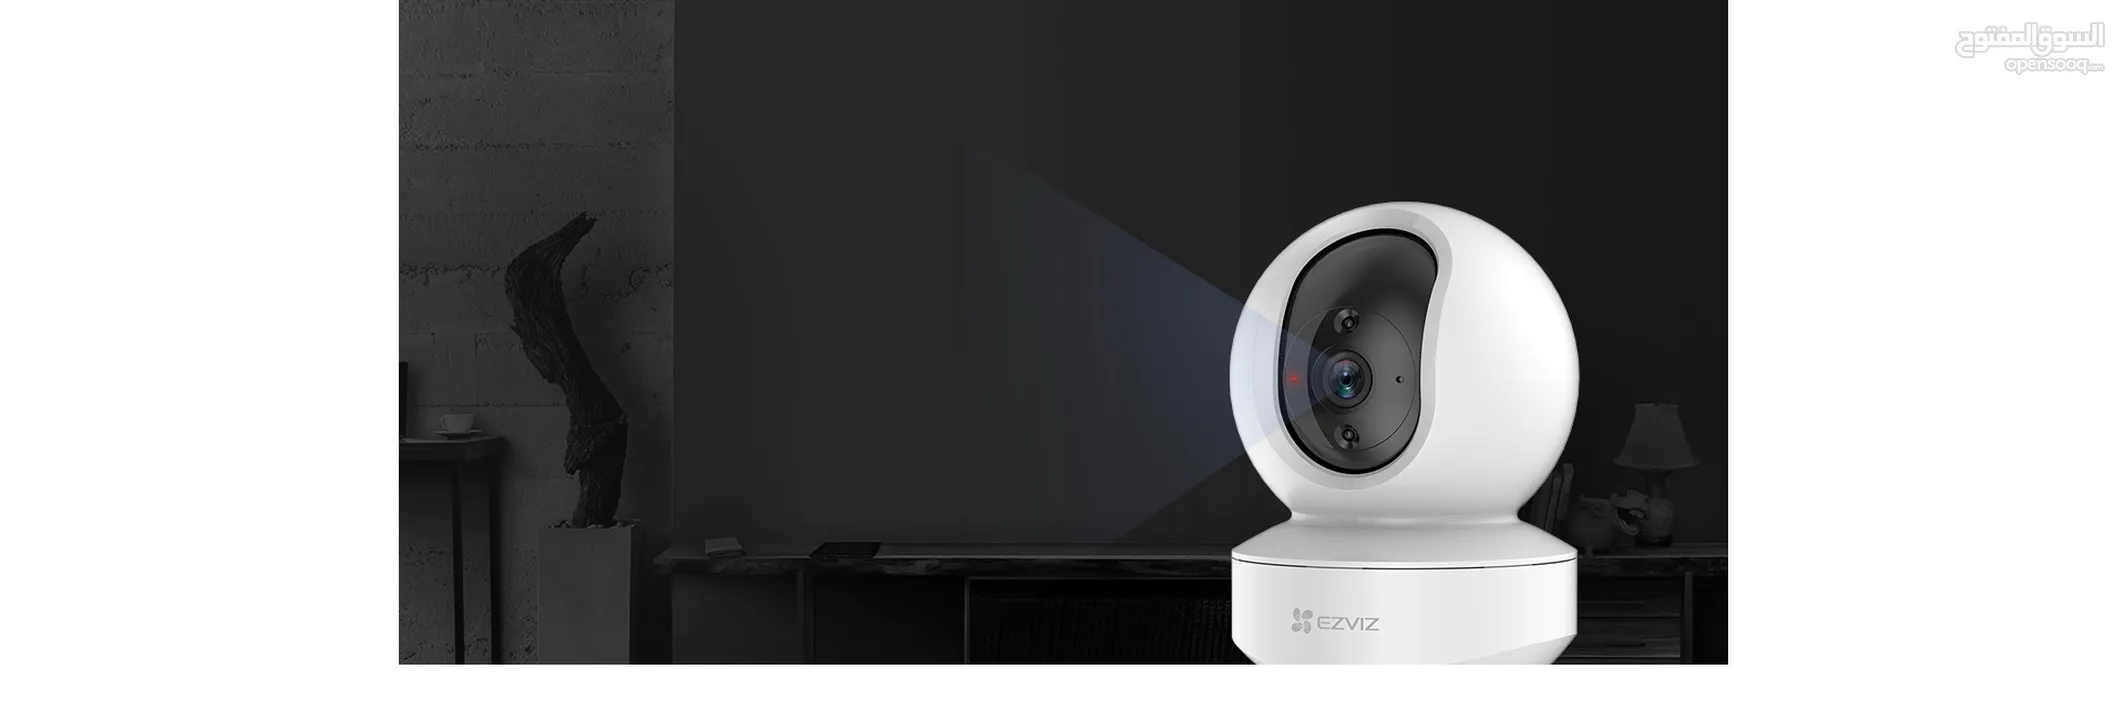 كاميرا لاسلكي 4MP 2K  متحركة 360 درجة بدون اسلاك نوع Ezviz Wireless Security Camera